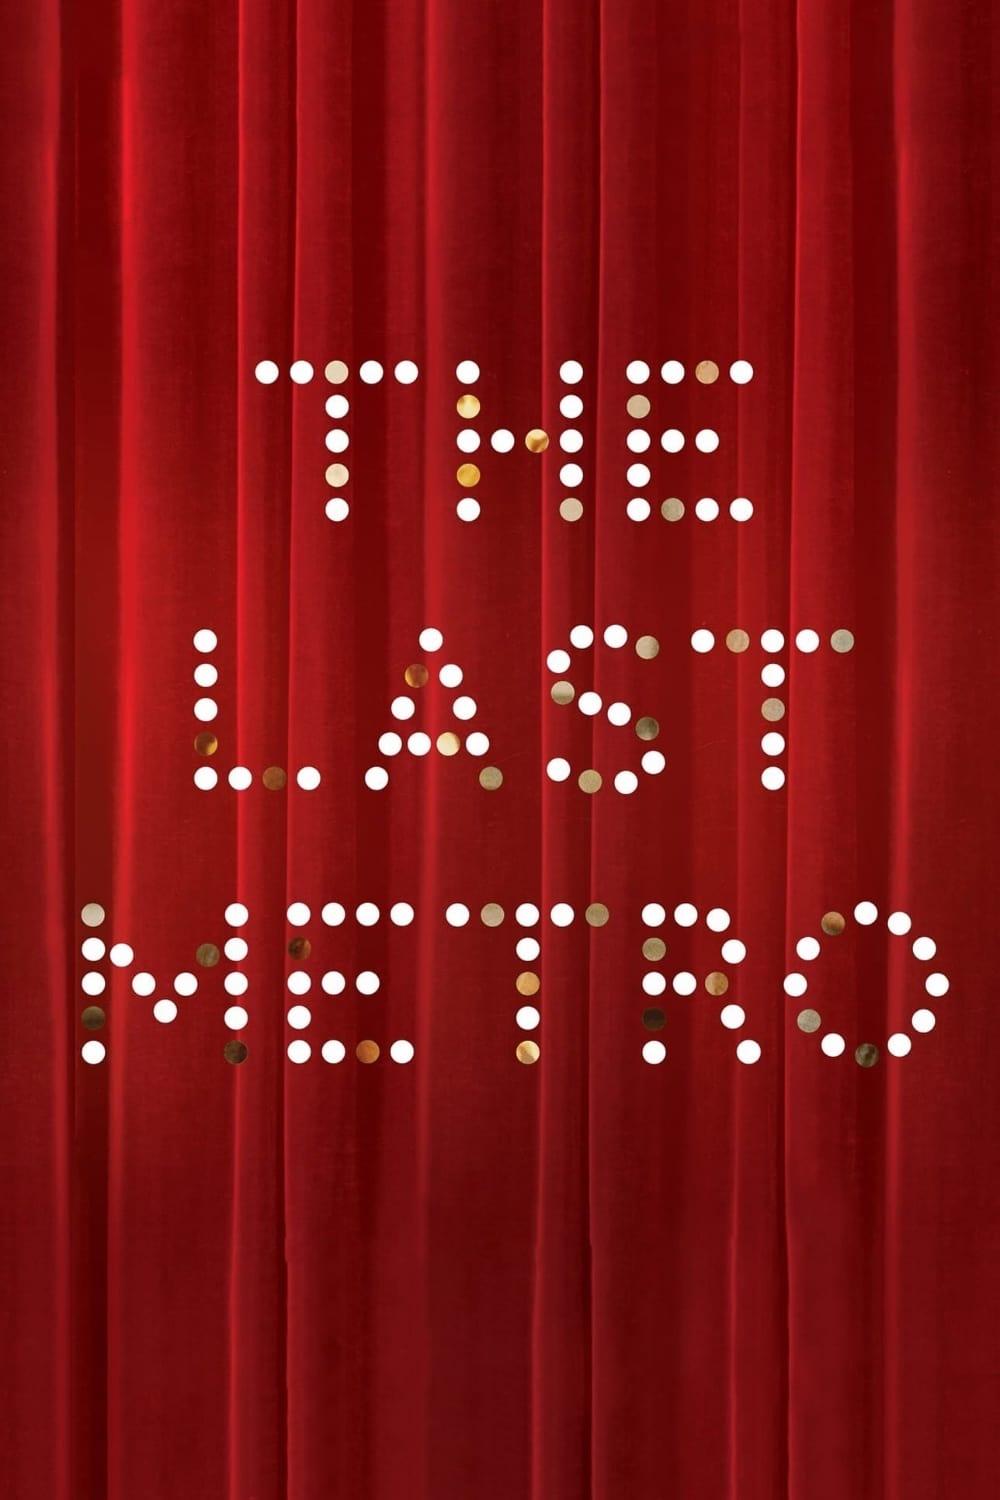 The Last Metro poster